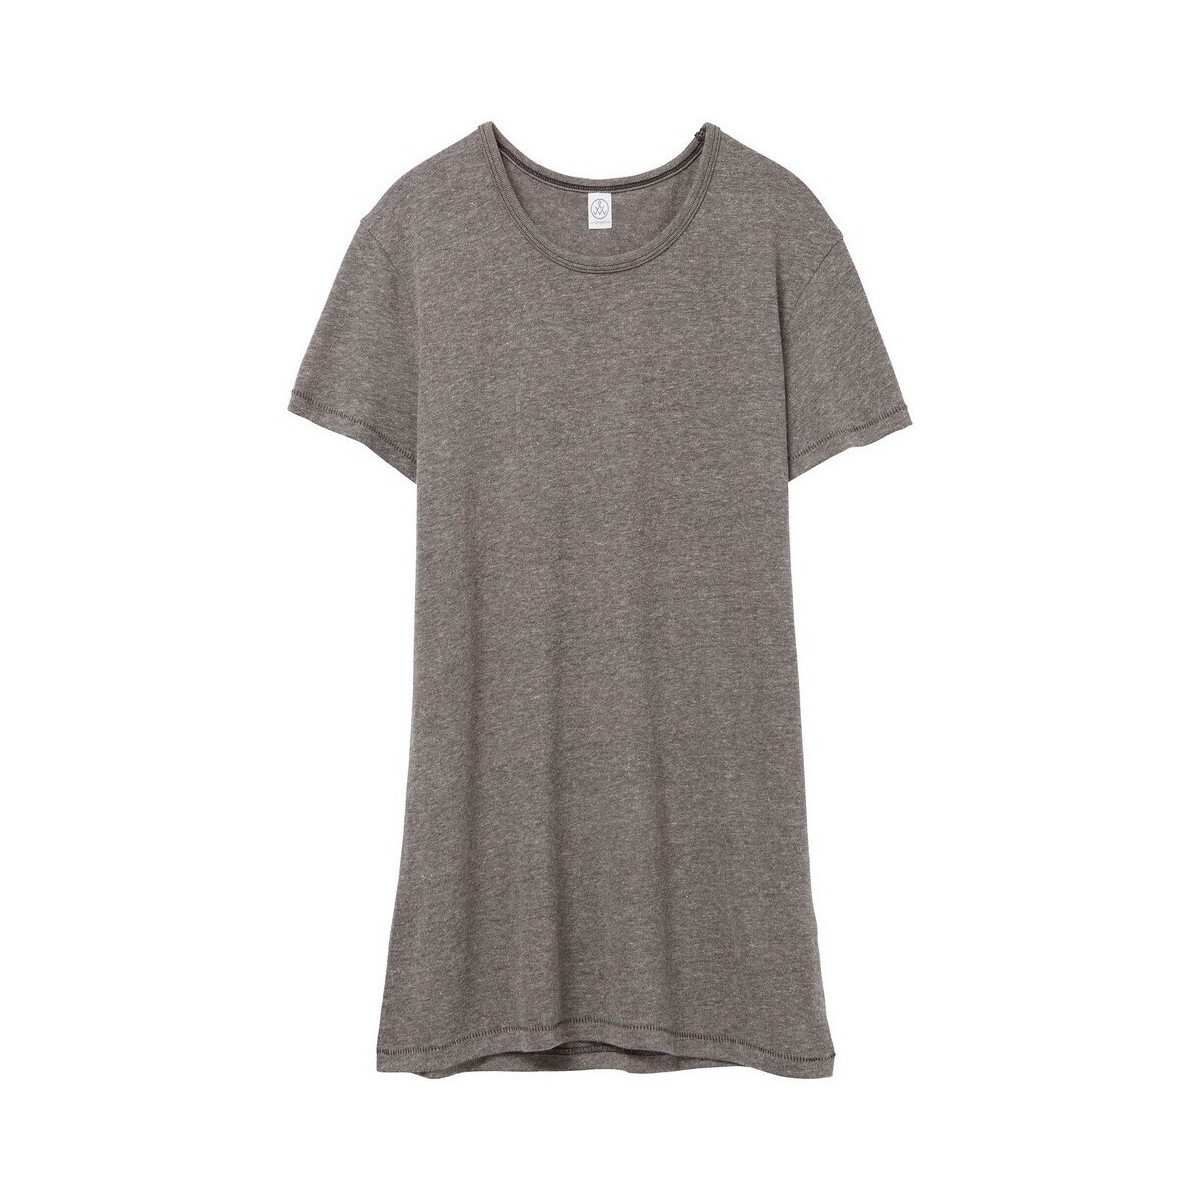 Vêtements Femme T-shirts manches longues Alternative Apparel 50/50 Gris